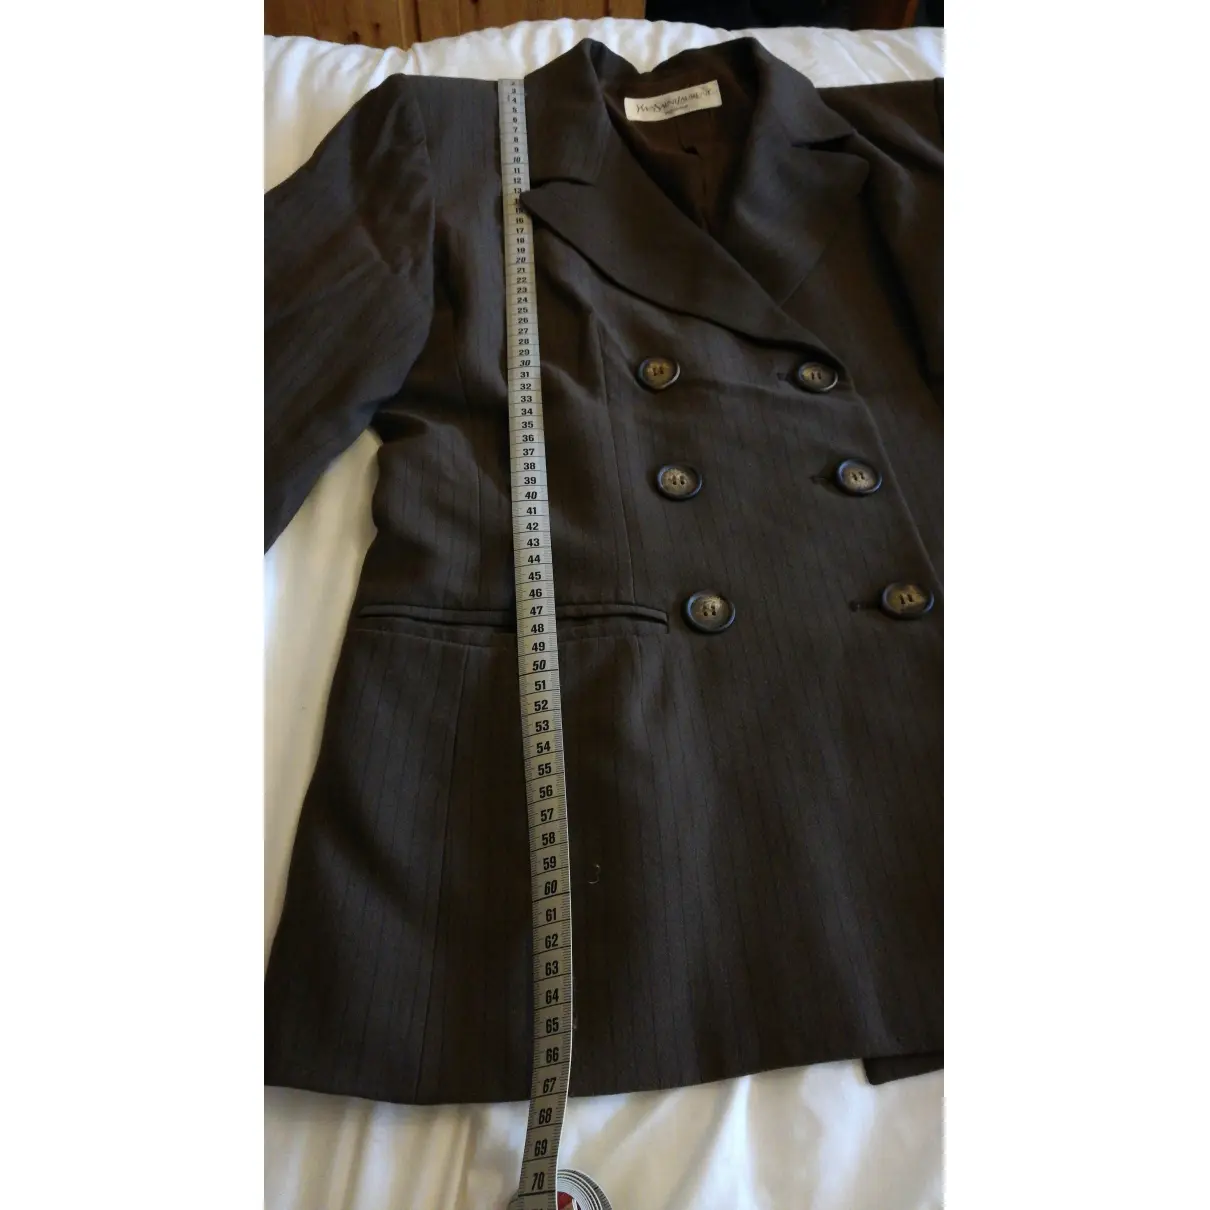 Buy Yves Saint Laurent Suit jacket online